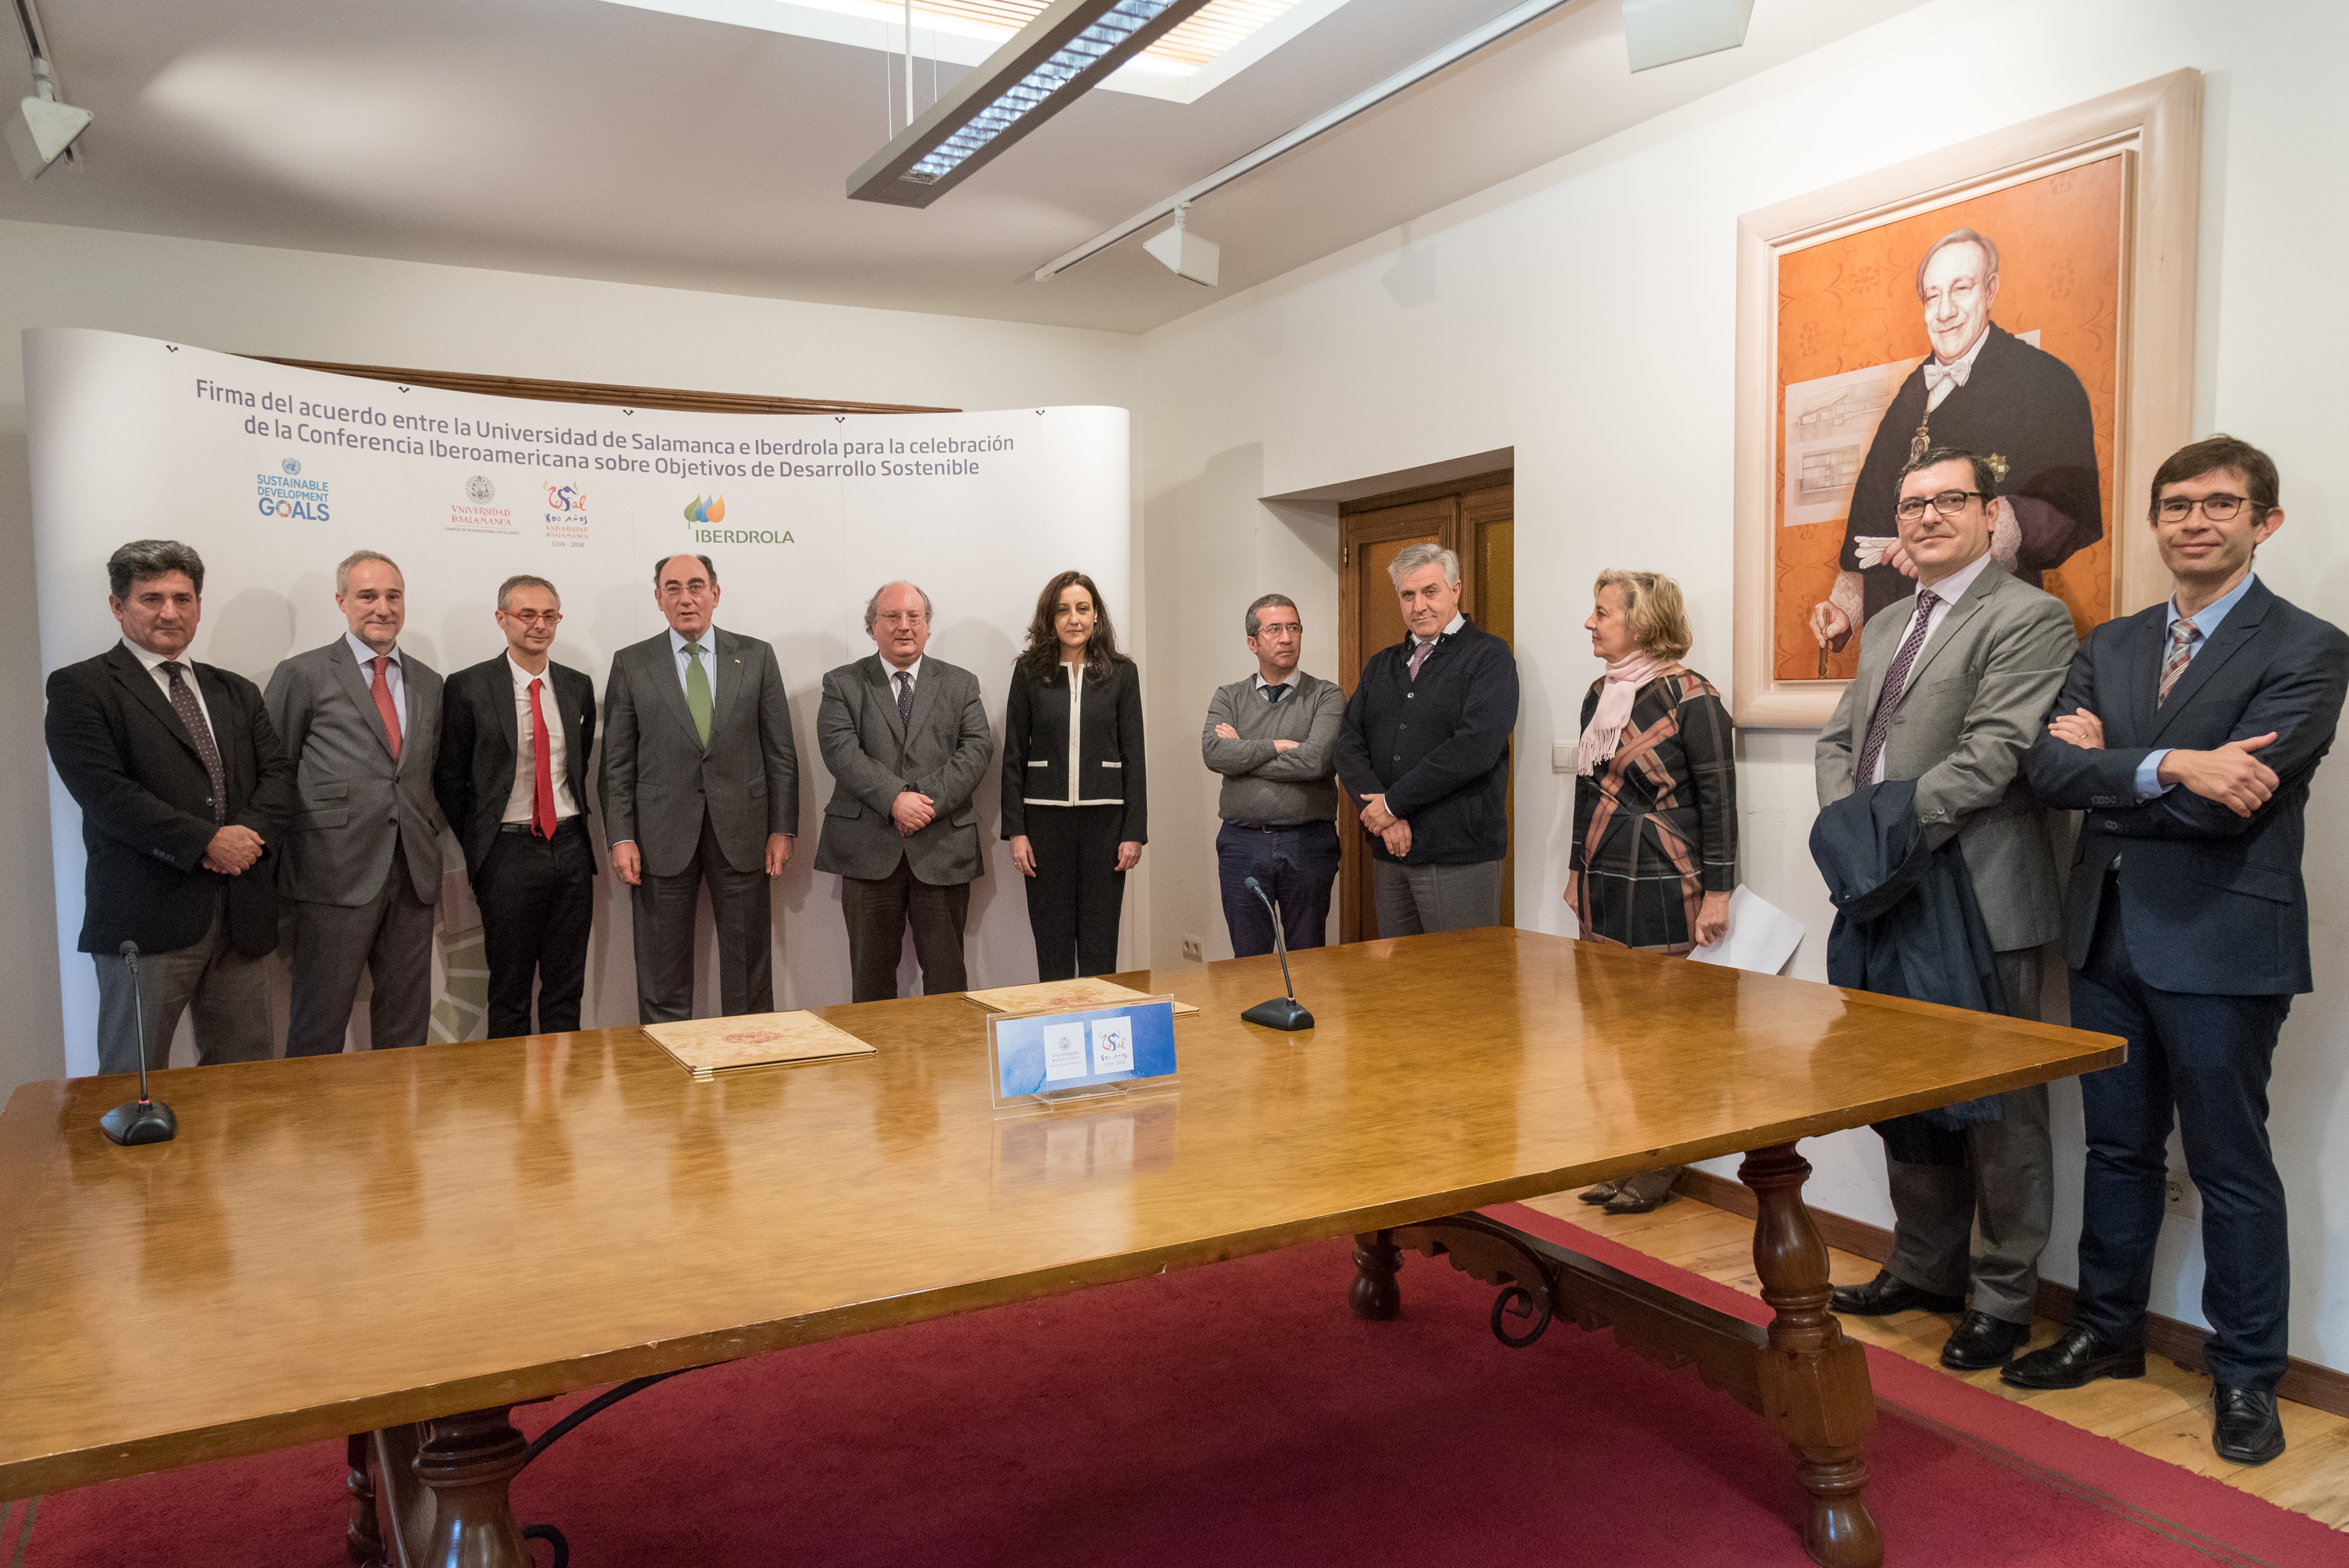 La Universidad de Salamanca e Iberdrola firman un acuerdo para la celebración de la Conferencia Iberoamericana sobre Objetivos de Desarrollo Sostenible